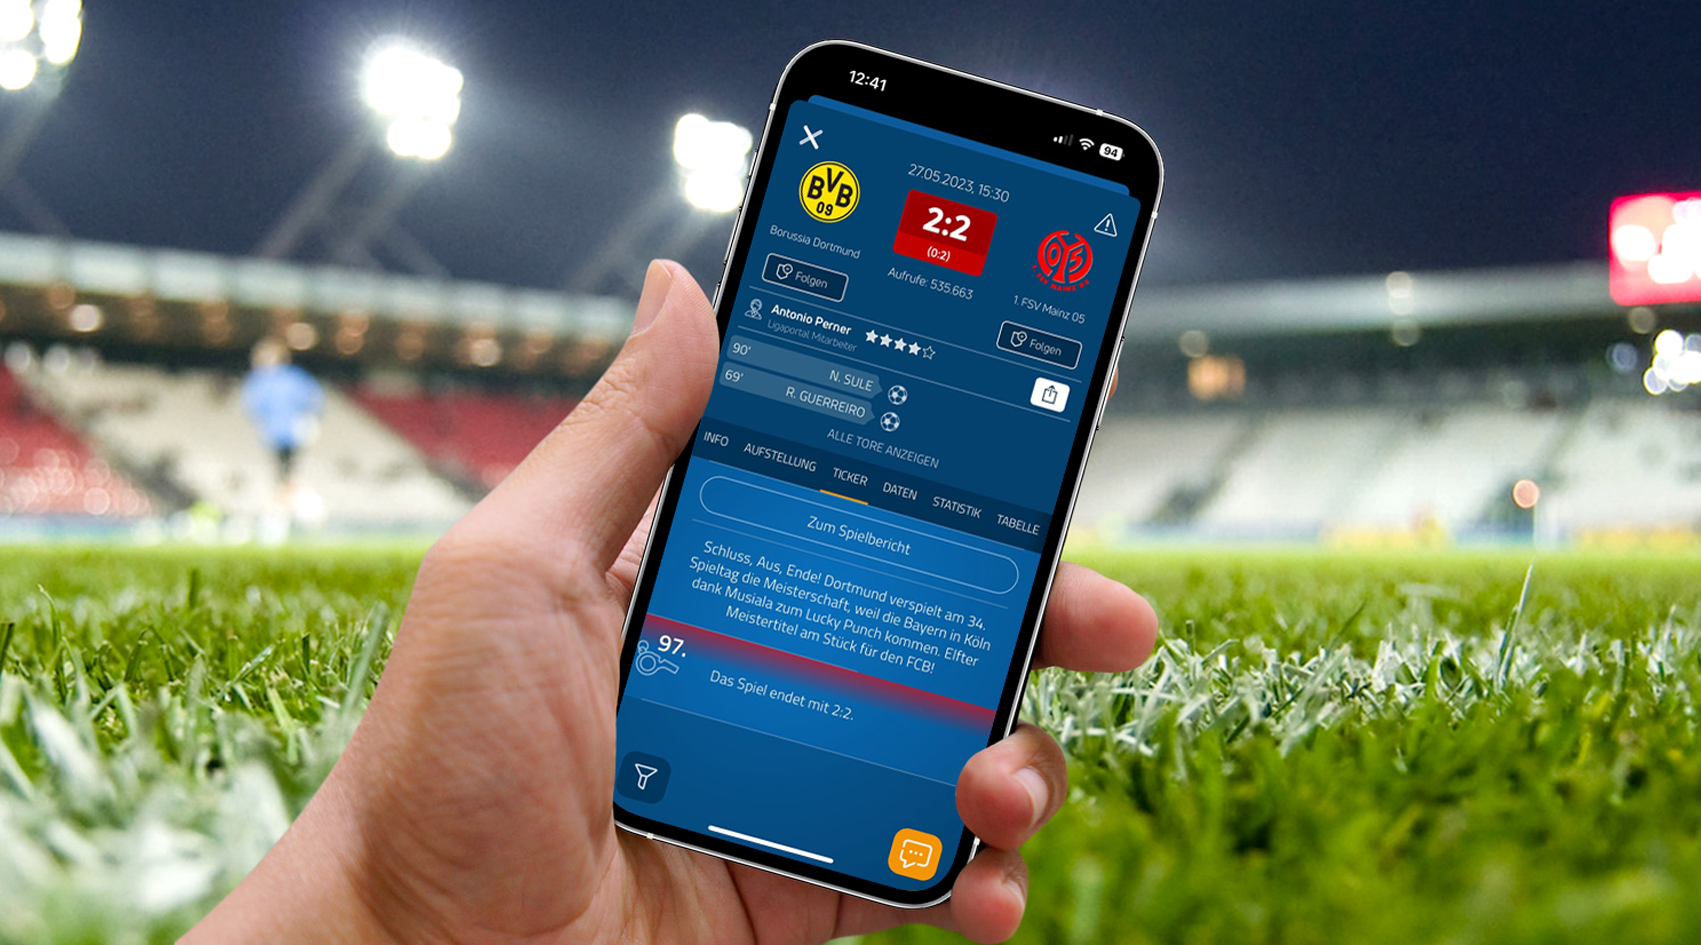 535.663 Aufrufe bei BVB-Spiel Ligaportal mit nächstem Live-Ticker-Rekord